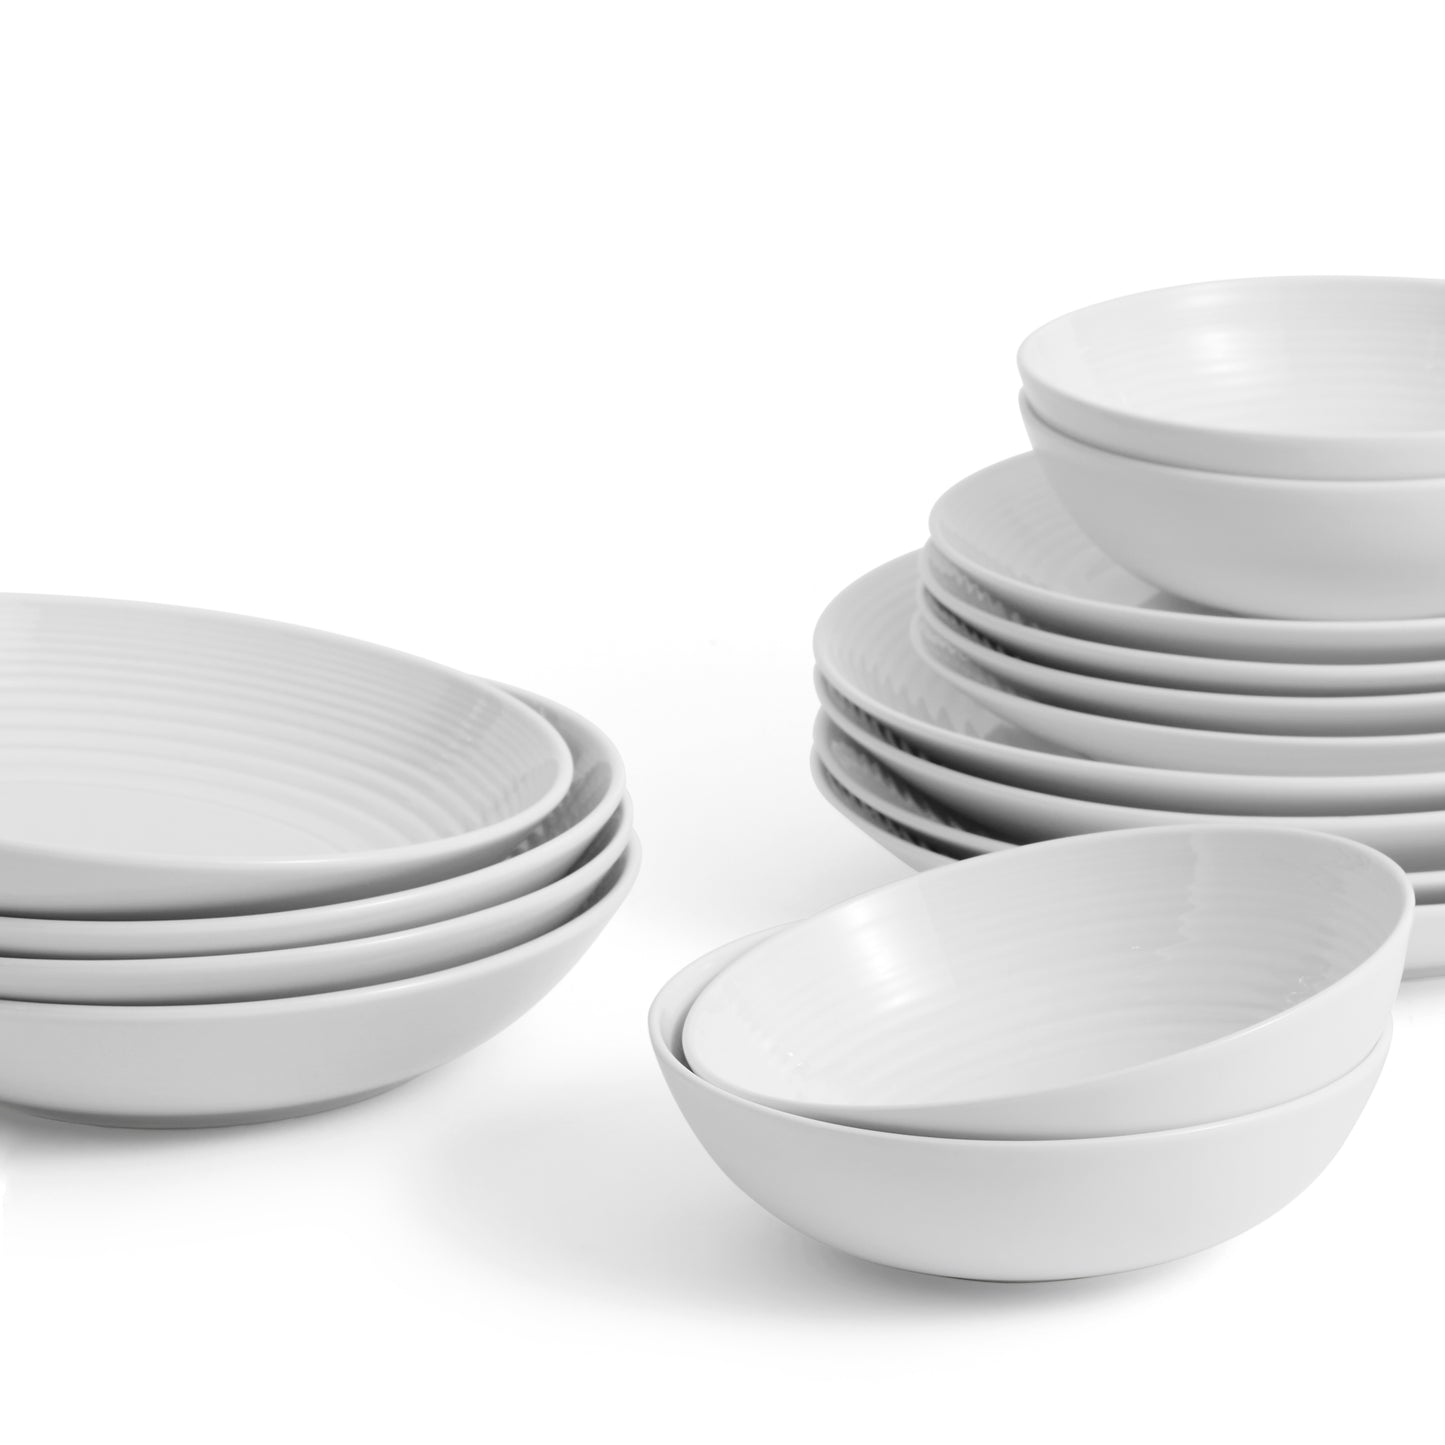 Royal Doulton Gordon Ramsay Maze Dinnerware Set White, 16 Piece Set with Pasta Bowls